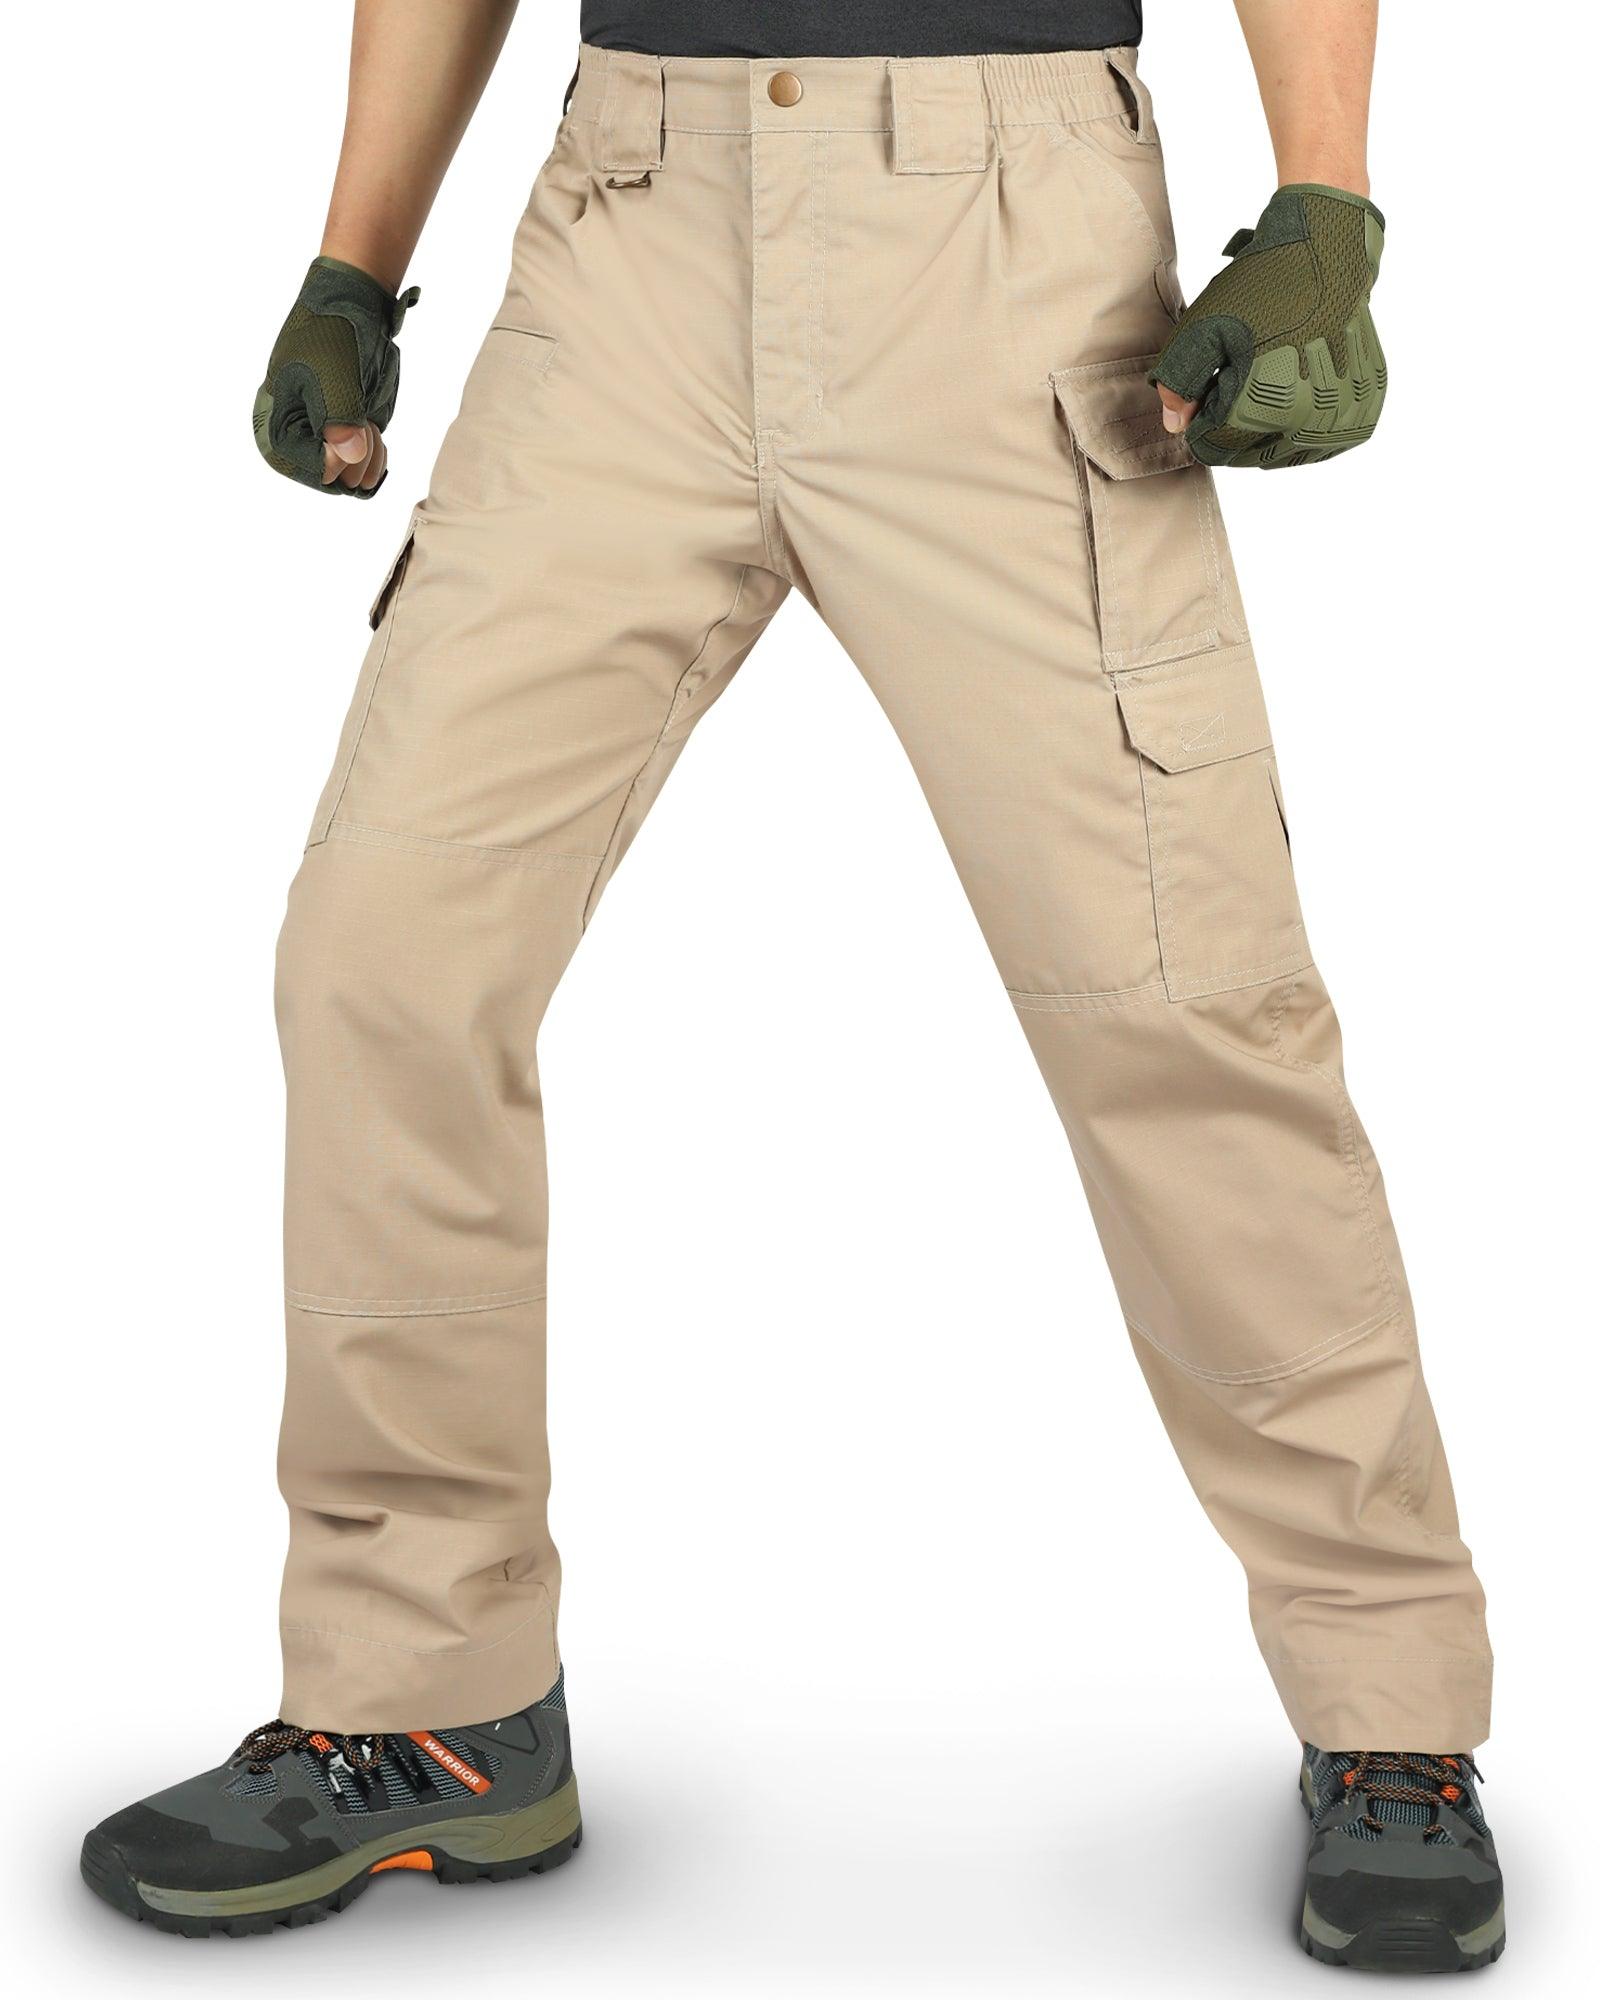 FREE SOLDIER Men's Lightweight Tactical Pants Waterproof Work